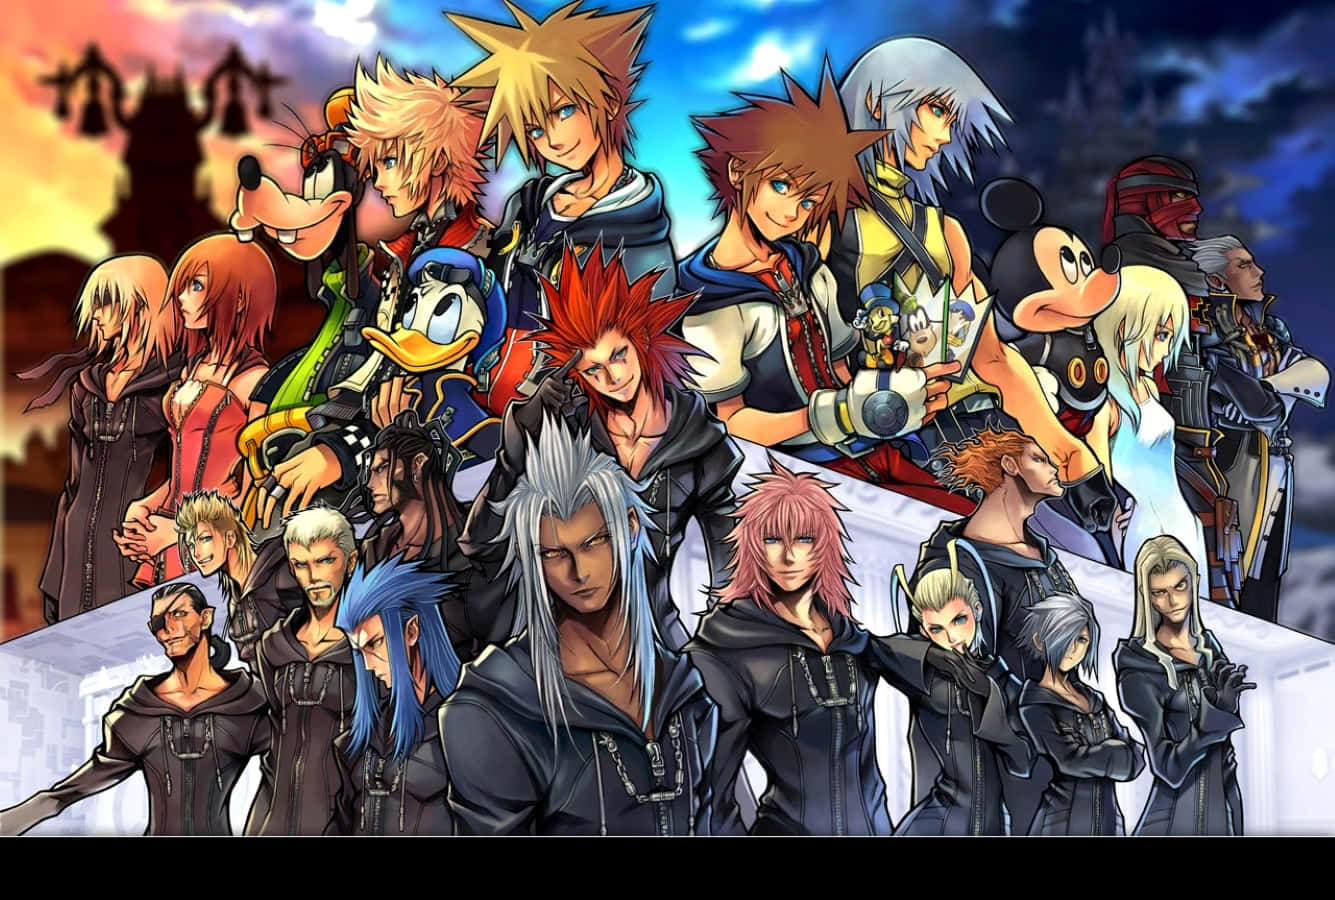 Organization XIII Members in Kingdom Hearts Wallpaper